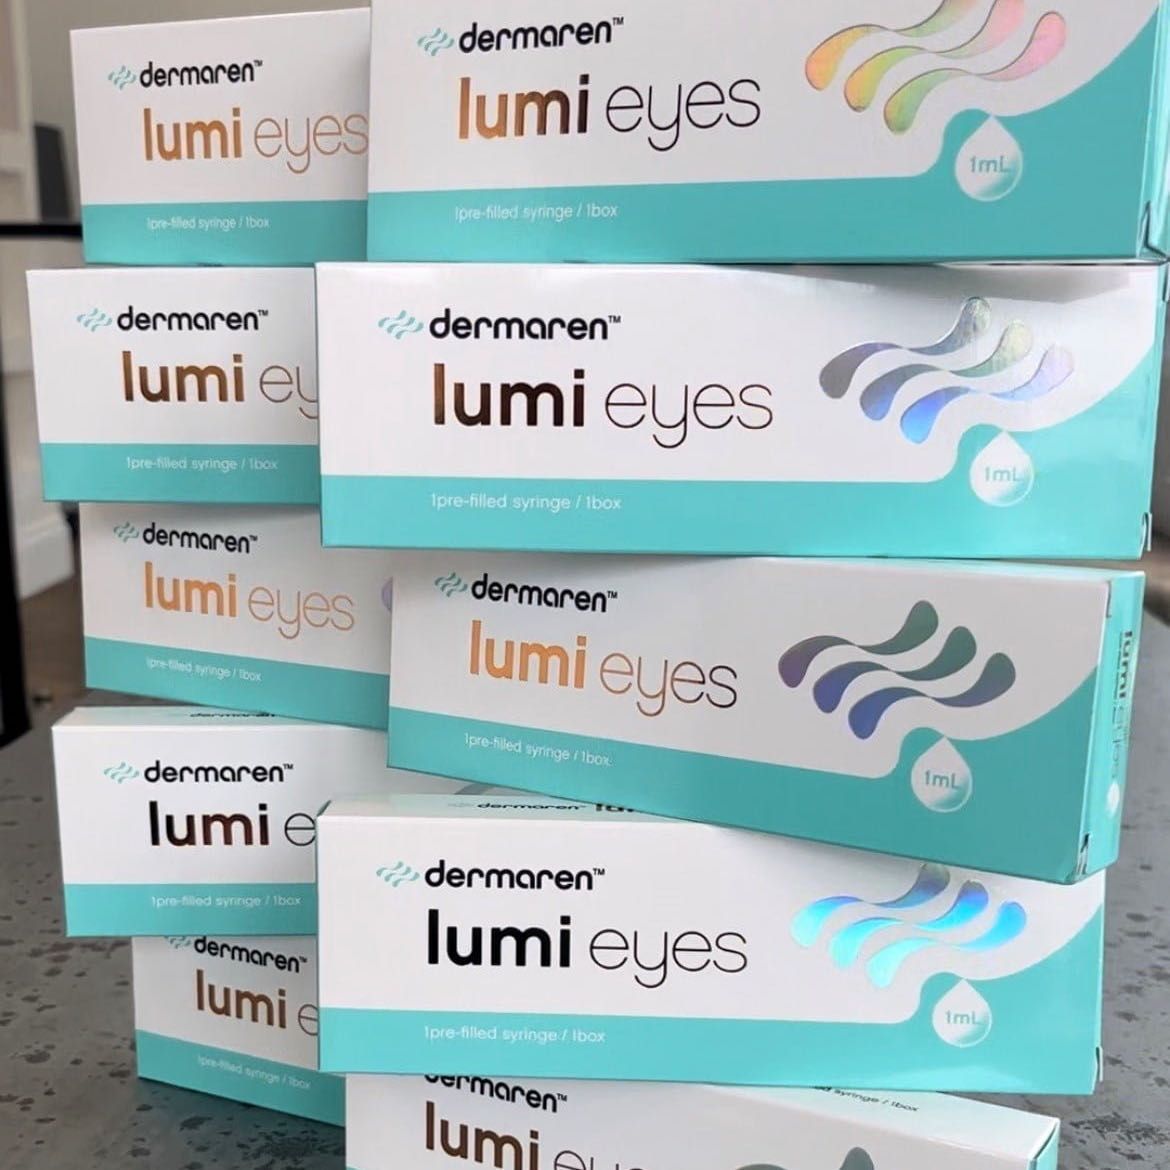 Lumi Eyes portfolio